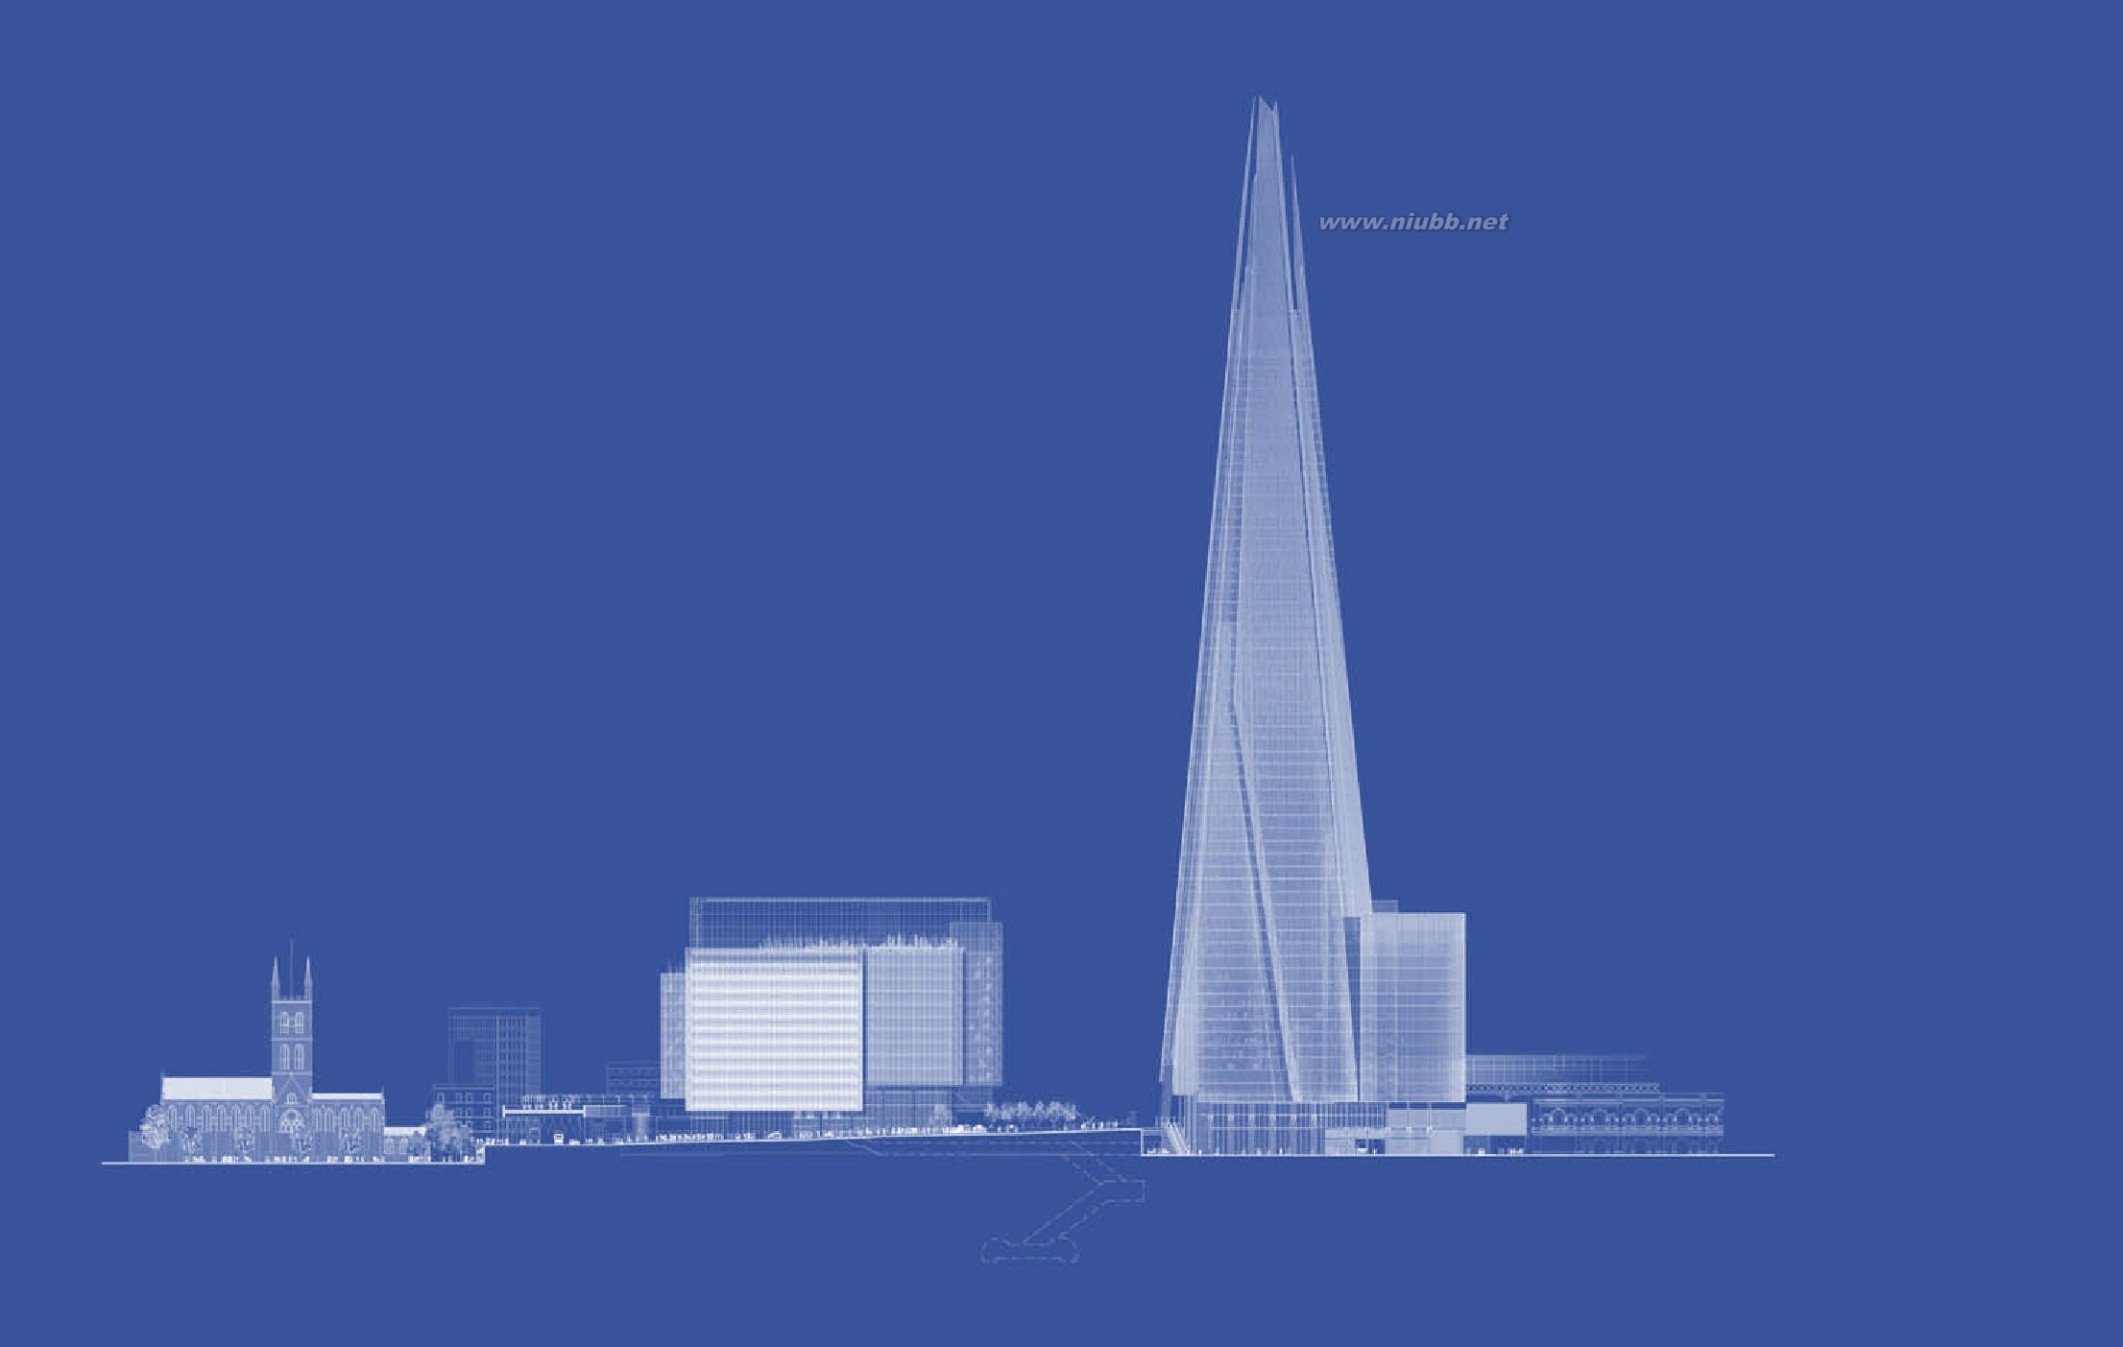 伦敦碎片大厦 伦敦碎片大厦(The Shard)规划设计方案